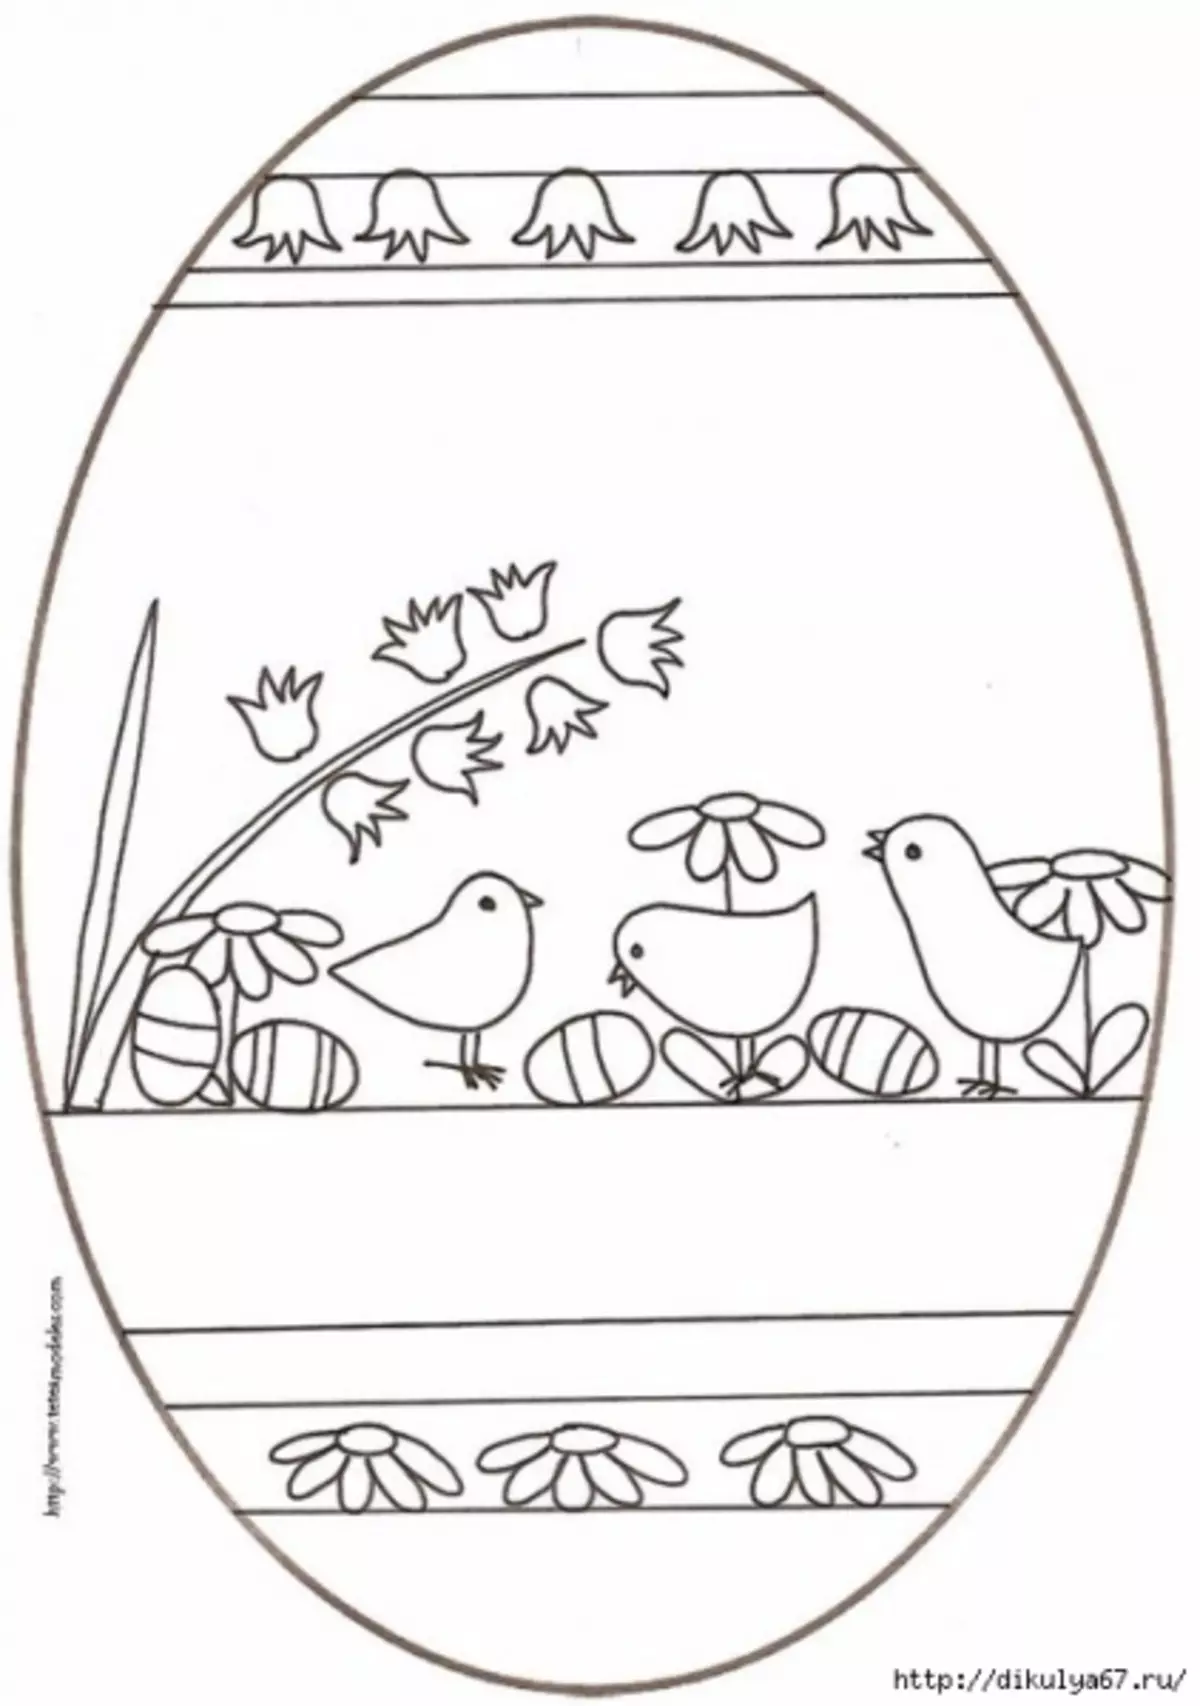 മുട്ട പെയിന്റിംഗ് വാക്സ്: ഫോട്ടോകളും സ്കീമുകളും ഉള്ള വീട്ടിൽ മാസ്റ്റർ ക്ലാസ്